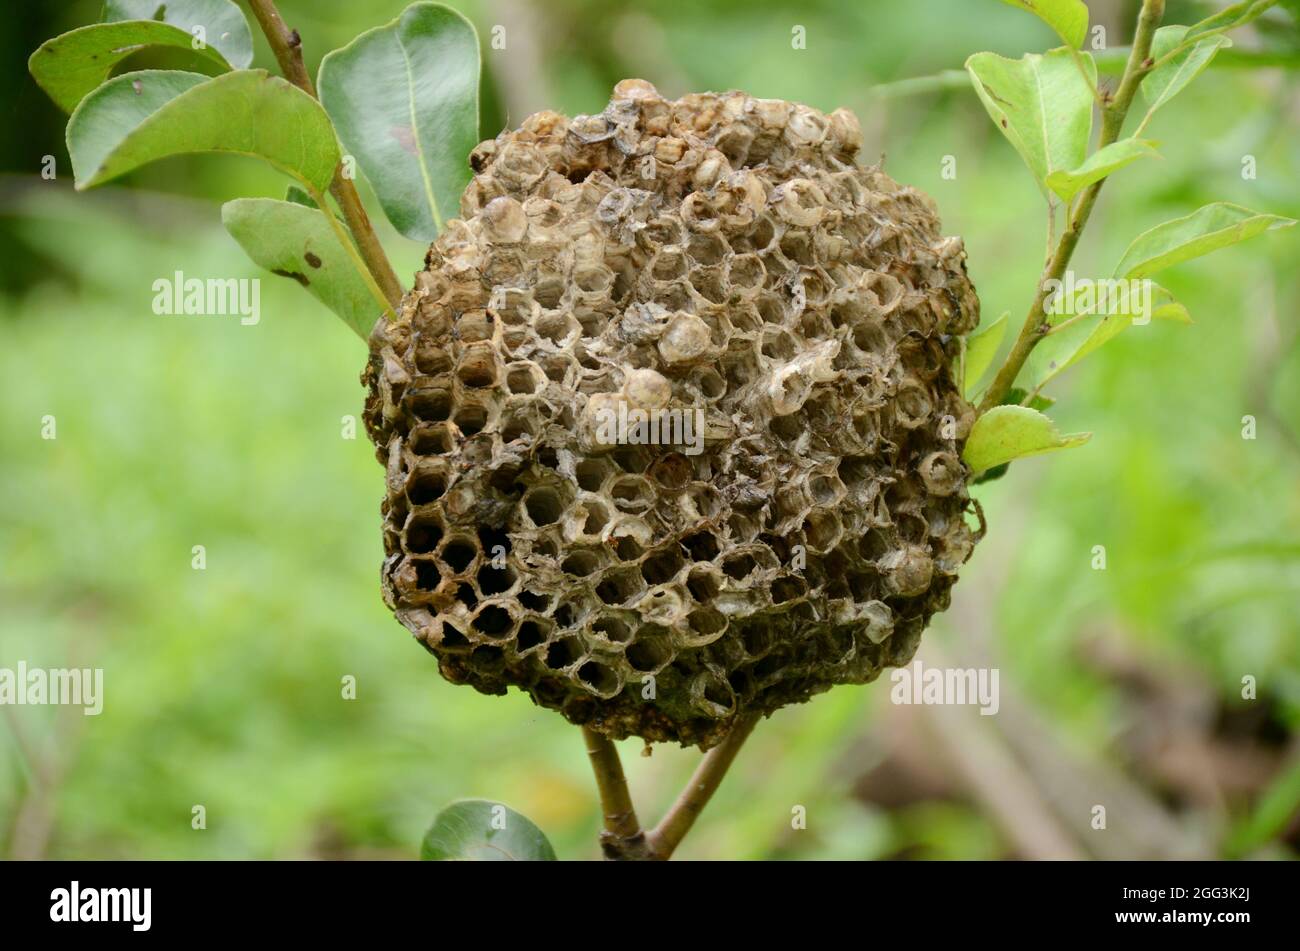 Nahaufnahme der braunen Farbe Honigbiene Kamm mit Blättern und Pflanzen über unscharf grün braunen Hintergrund. Stockfoto